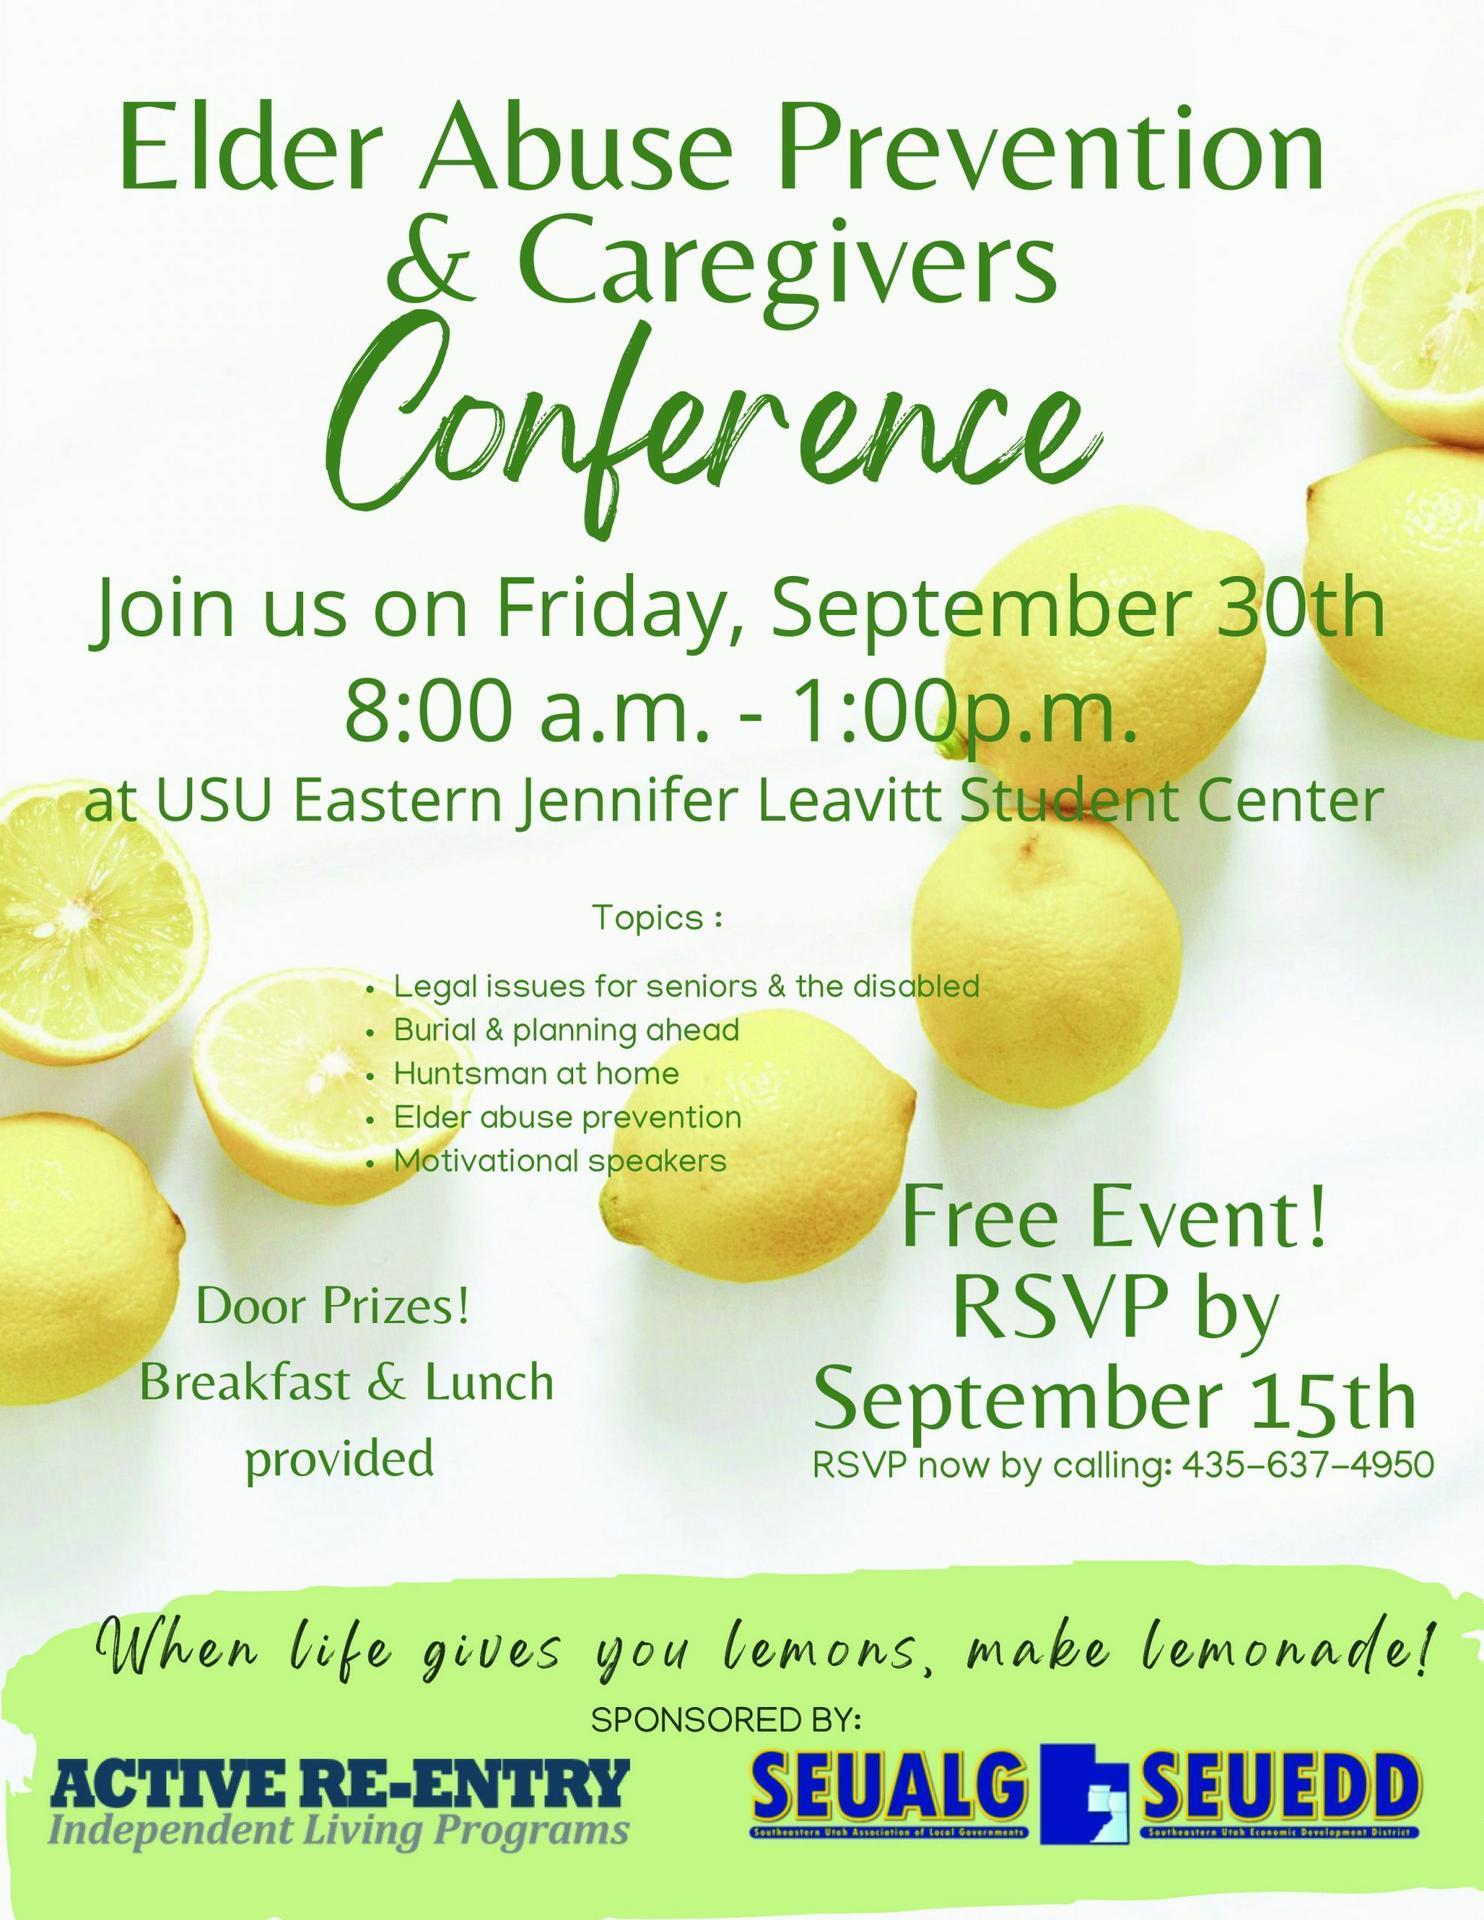 Caregivers-Conference-Flyer-pdf-scaled.jpg